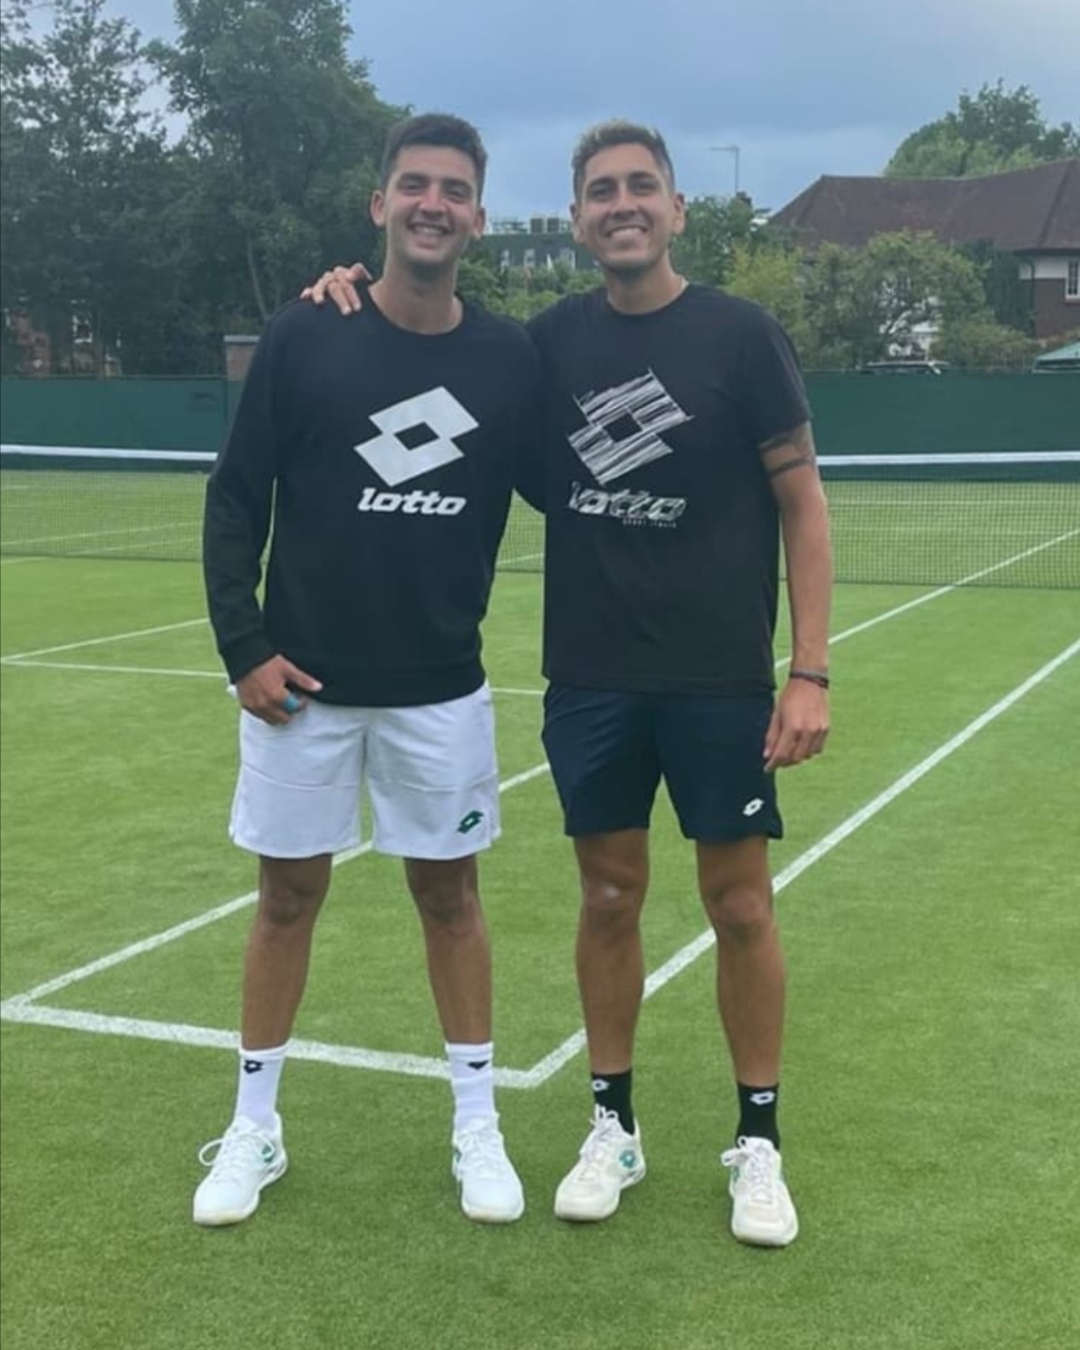 Alejandro Tabilo y Tomas Barrios juegan el lunes en Wimbledon